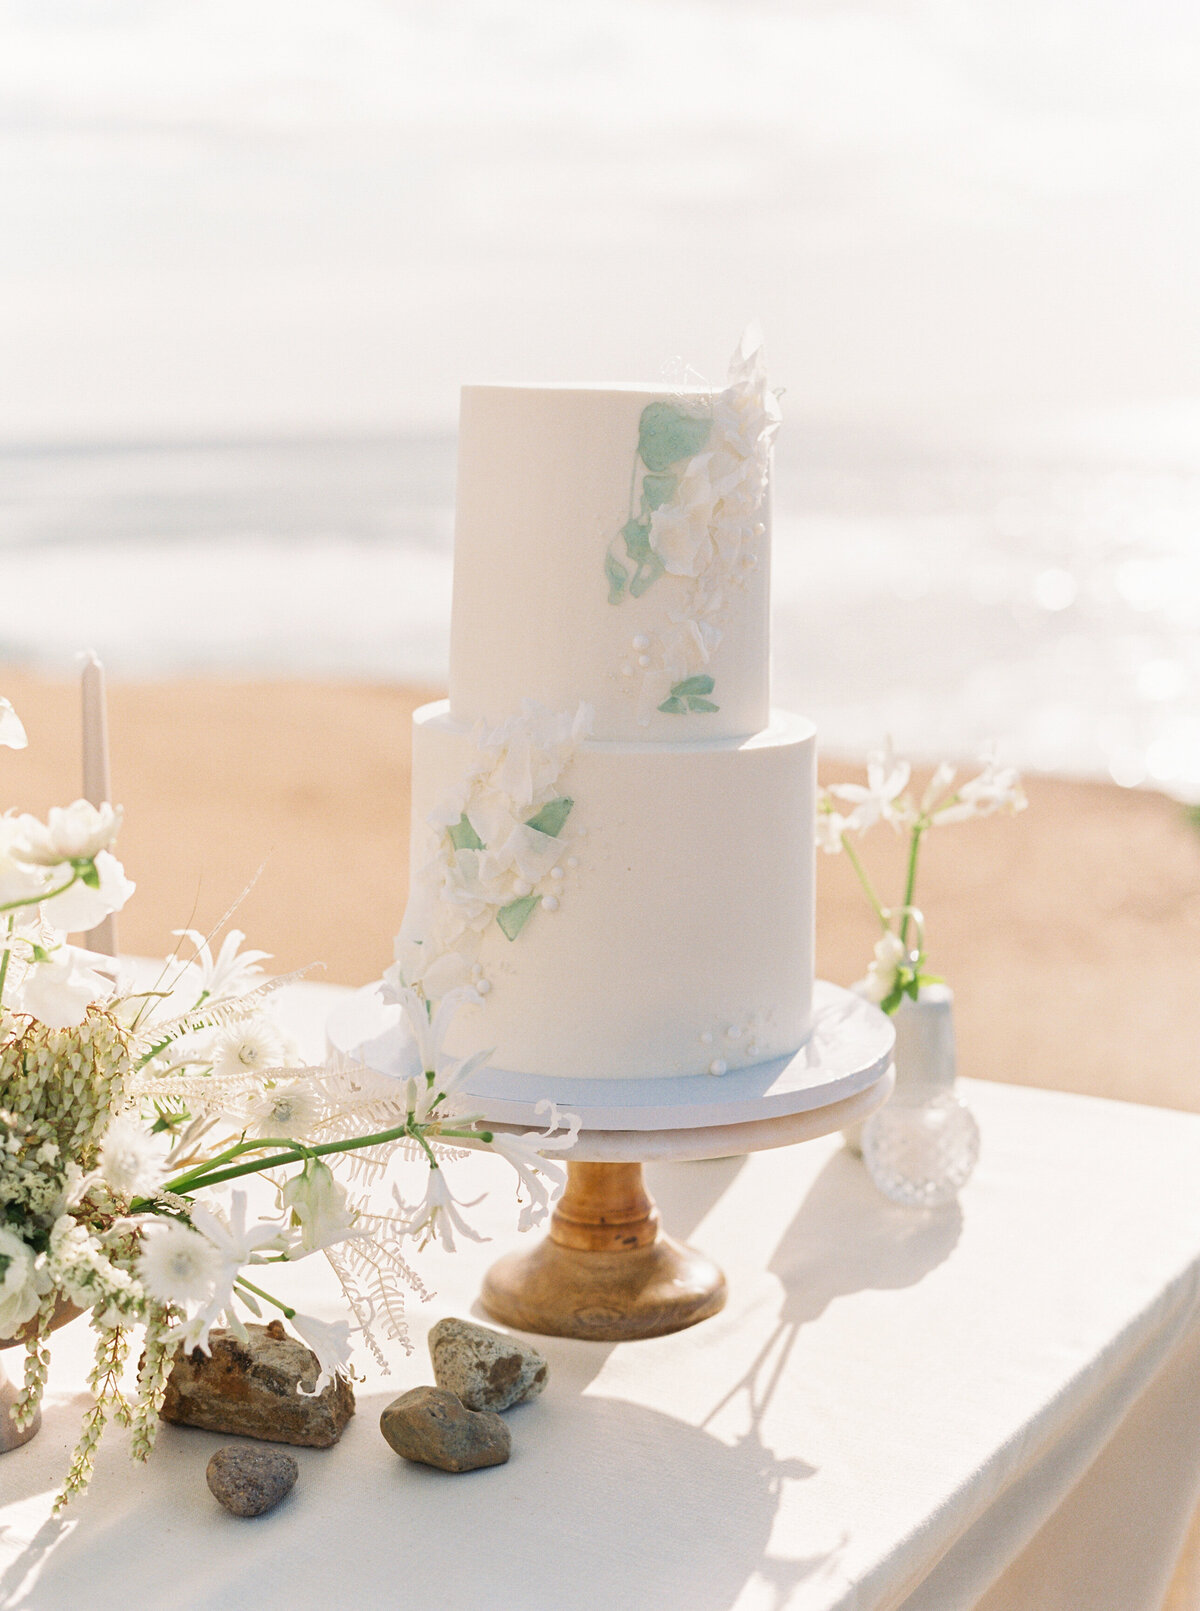 max-owens-design-california-destination-wedding-florist-12-cake-sea-glass